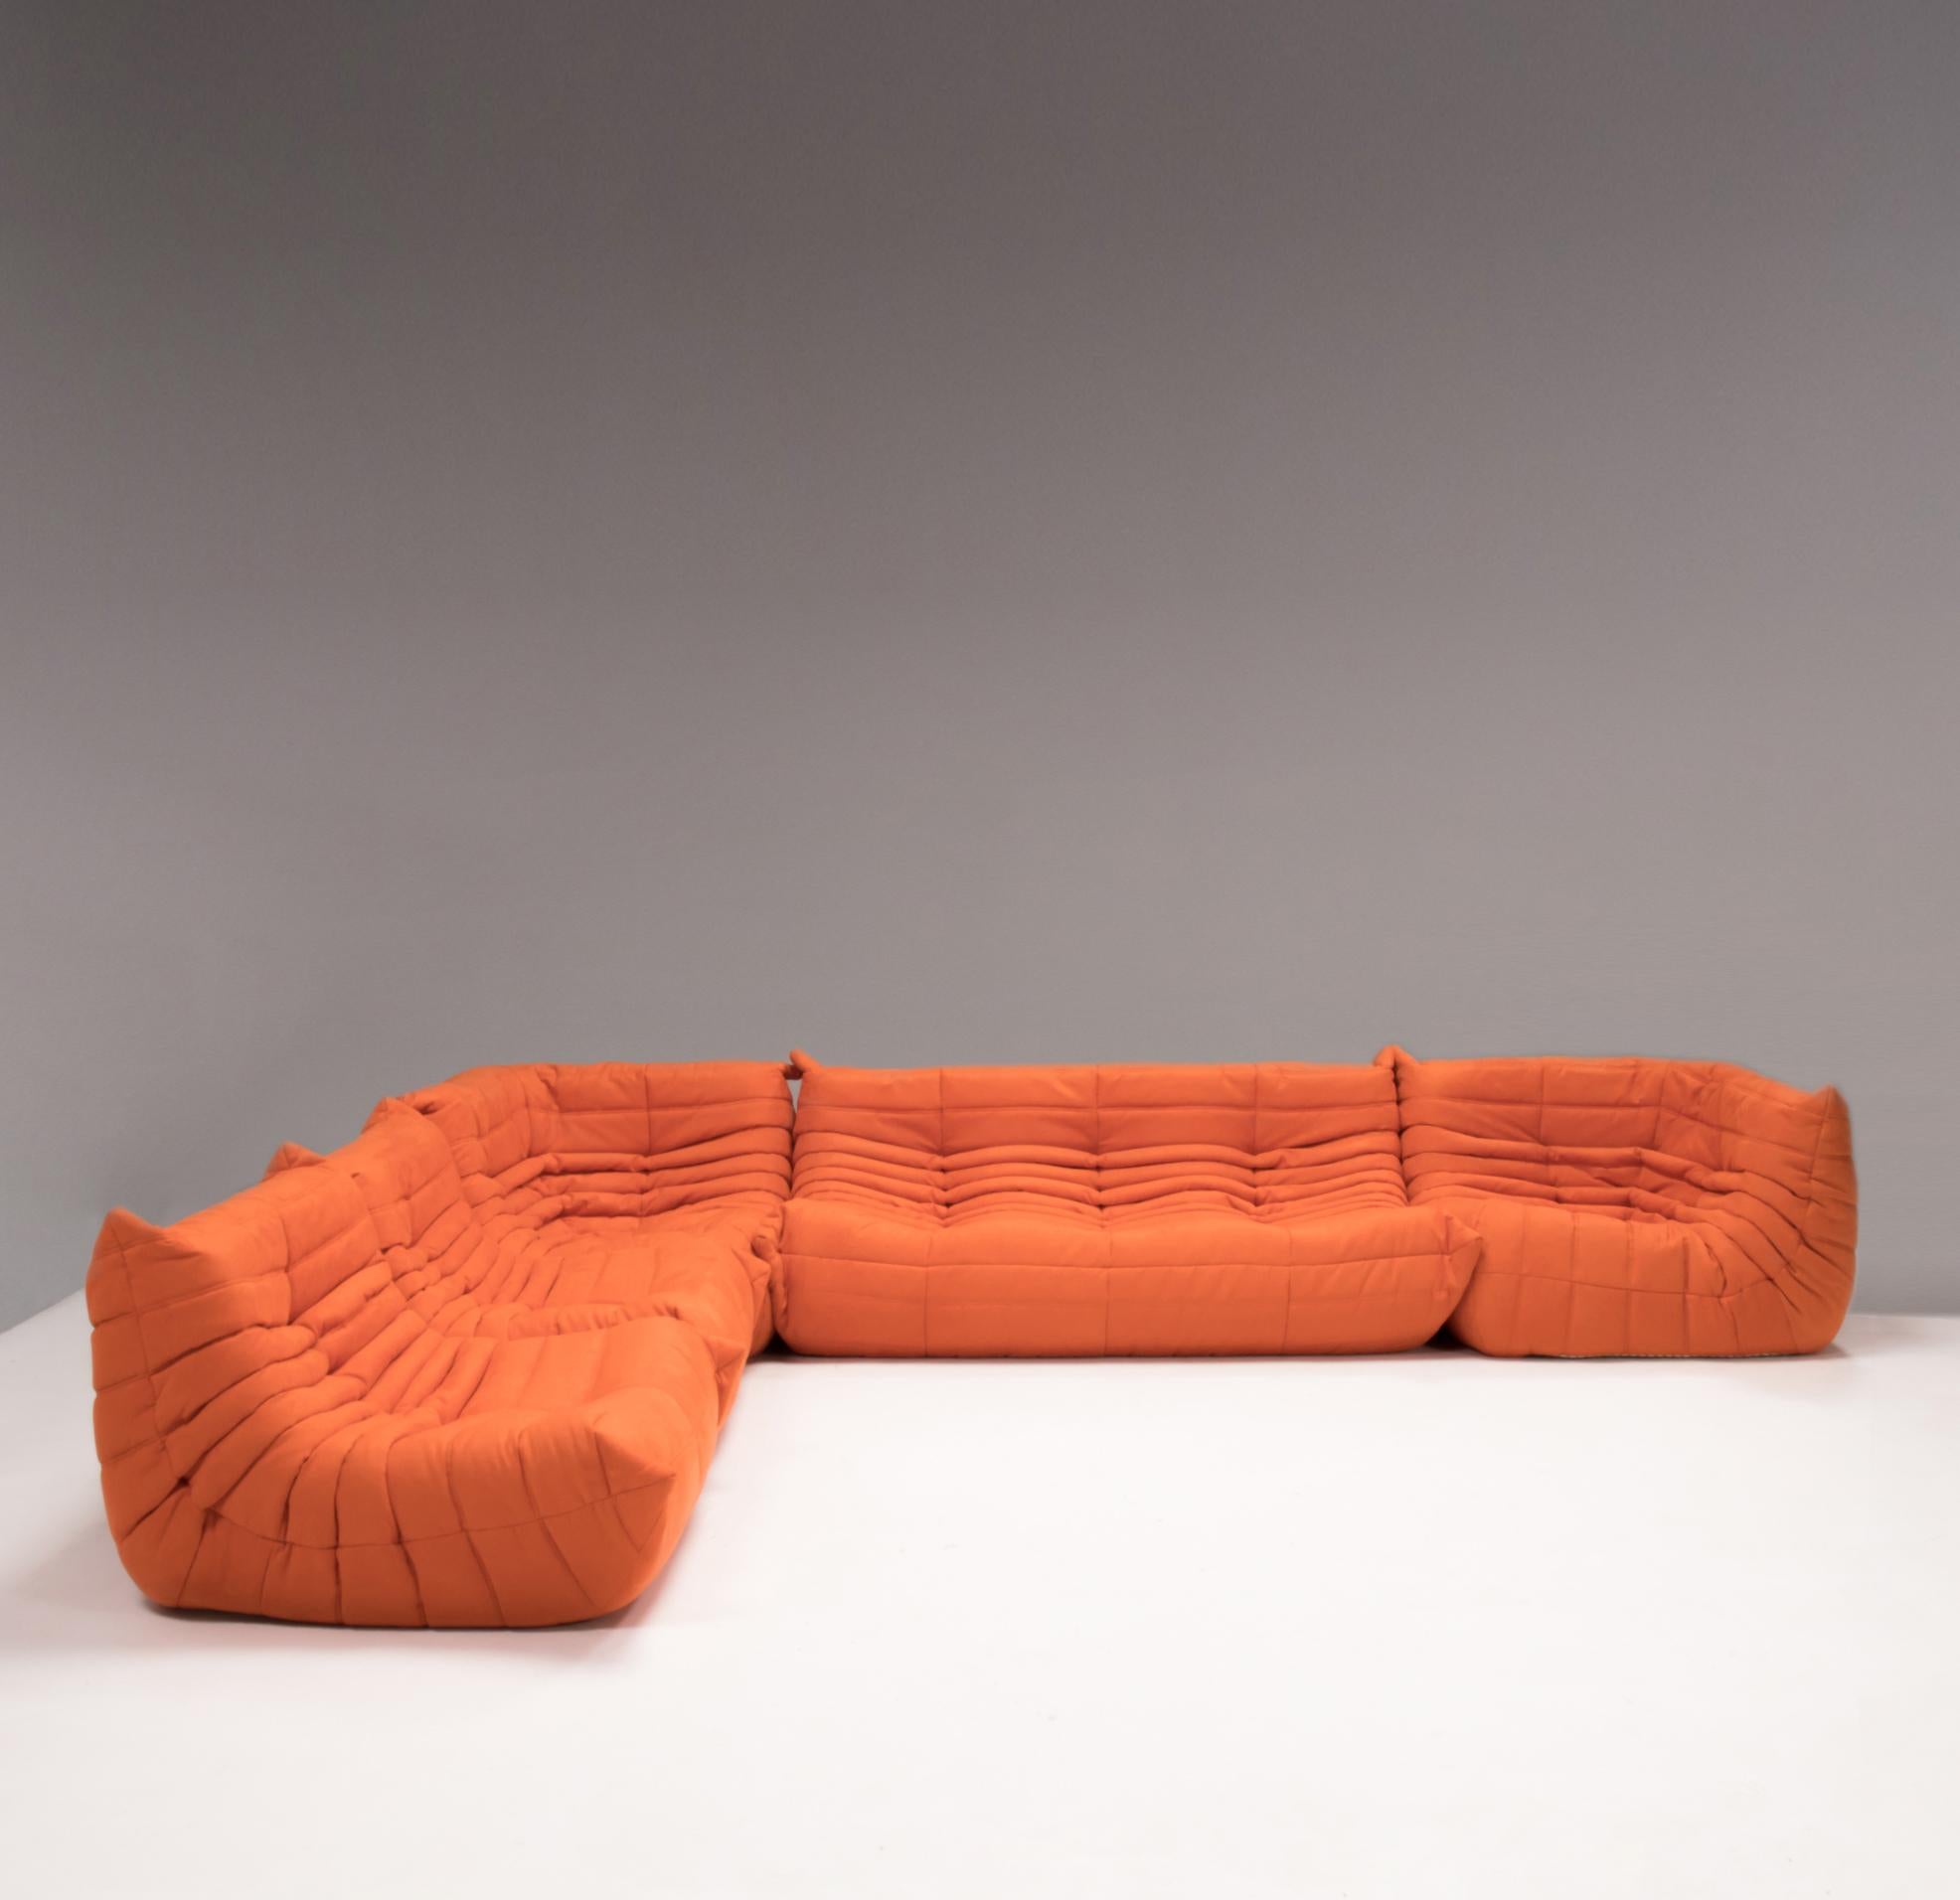 L'ensemble canapé Togo orange, conçu à l'origine par Michel Ducaroy pour Ligne Roset en 1973, est devenu un classique du design du milieu du siècle.

Les canapés ont été récemment retapissés dans un tissu doux de couleur orange vif. Fabriquée